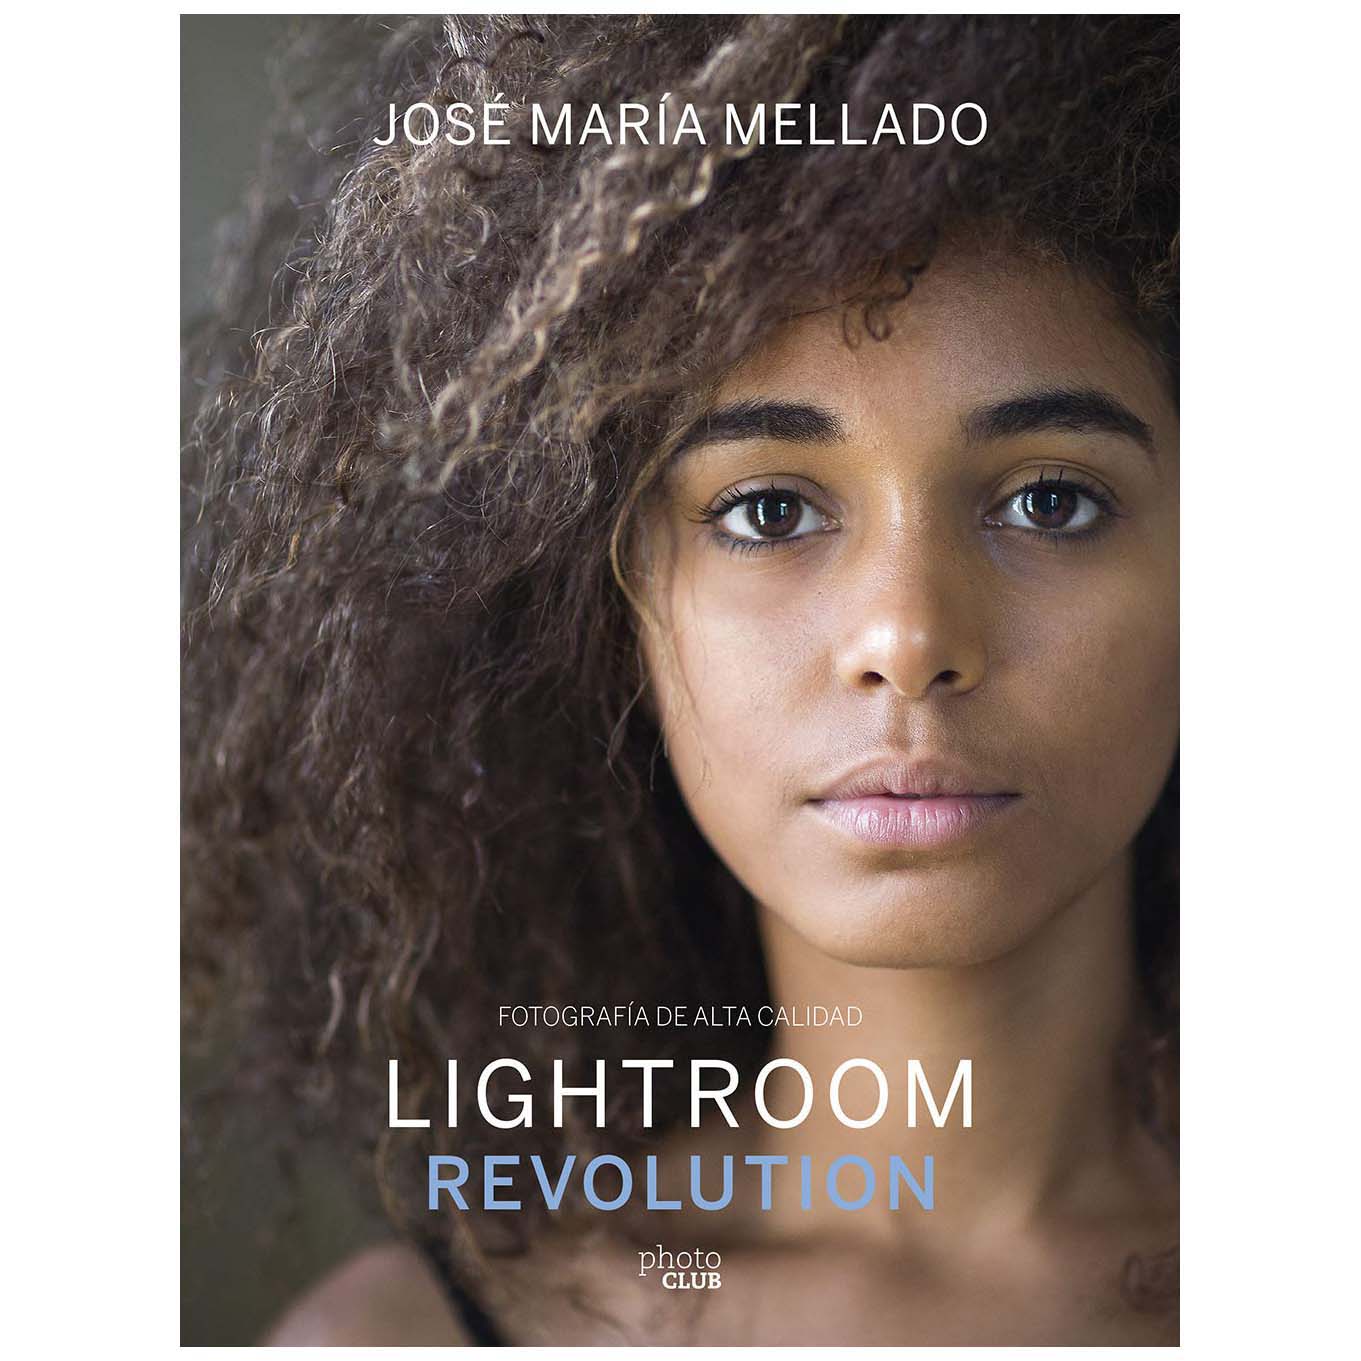 LIBRO LIGHTROOM REVOLUTION (JOSE MARIA MELLADO)